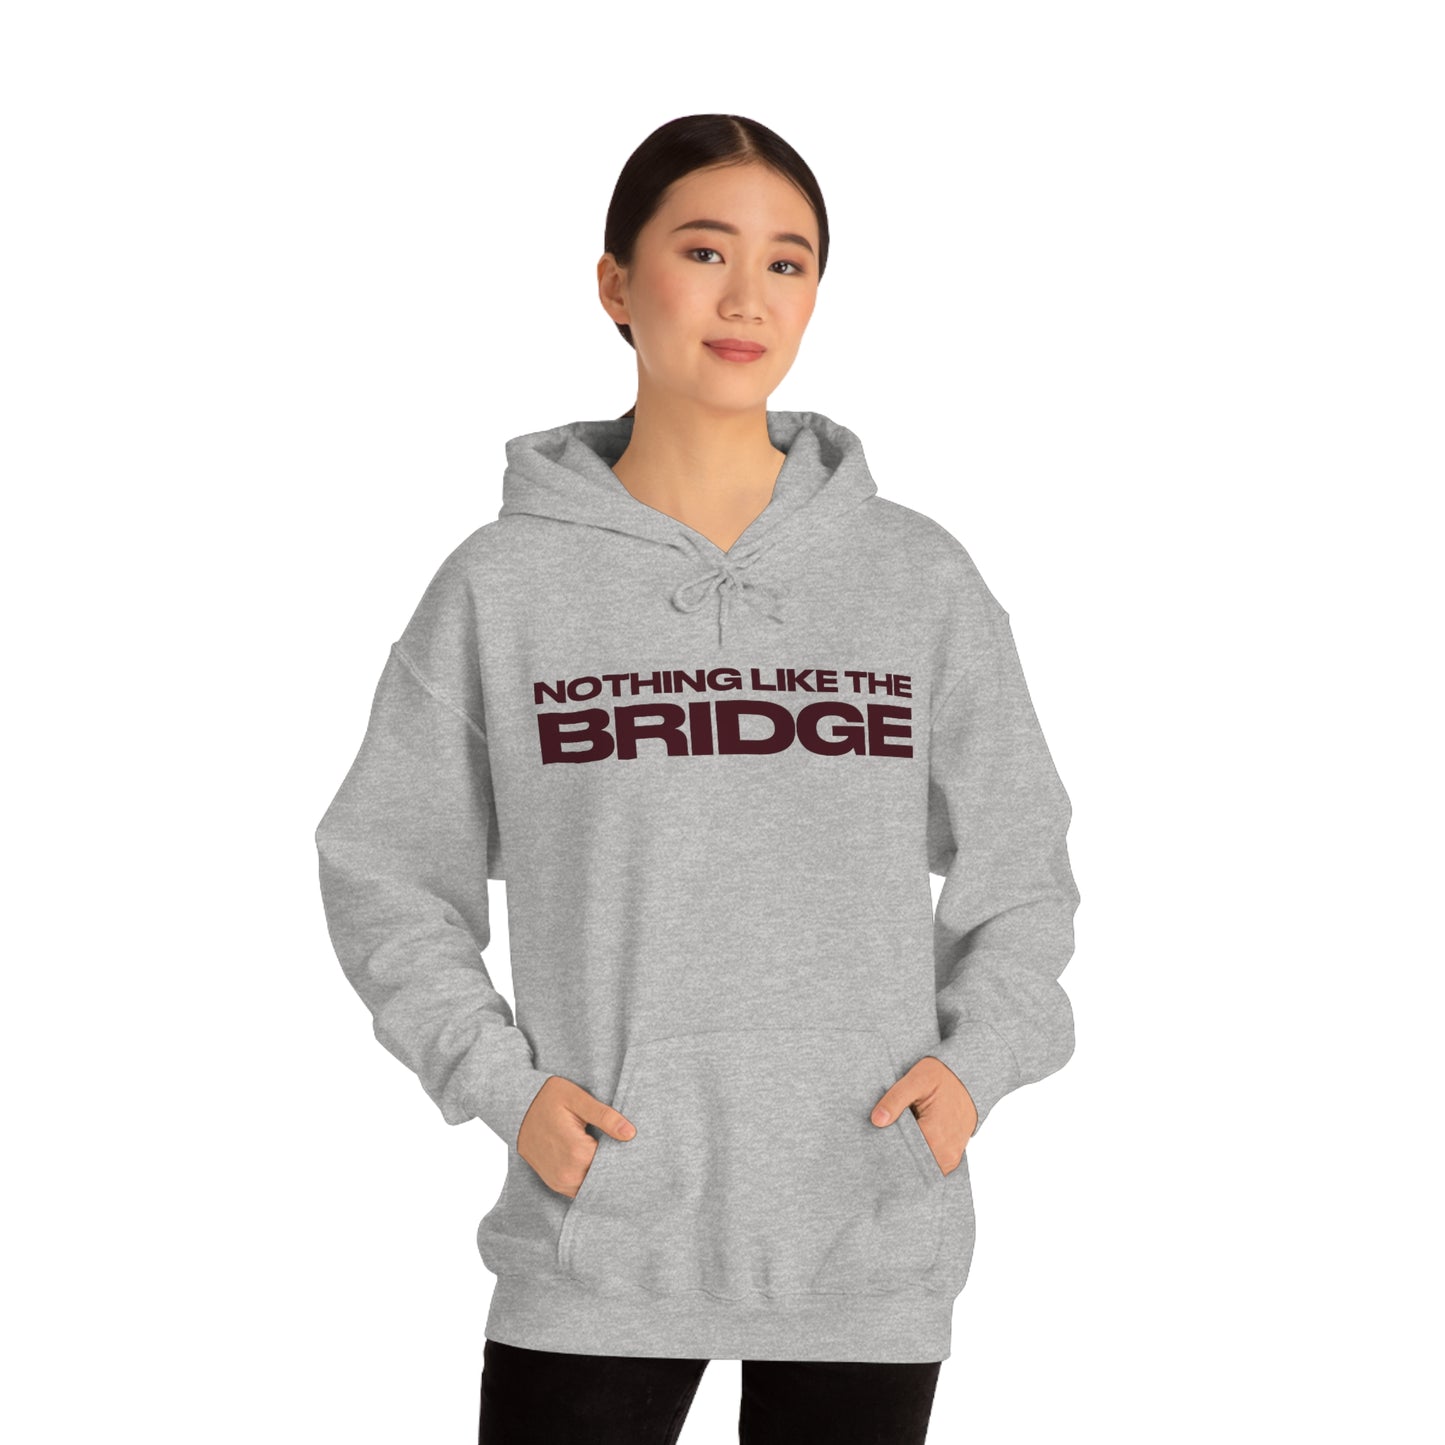 Nothing Like The Bridge Hooded Sweatshirt